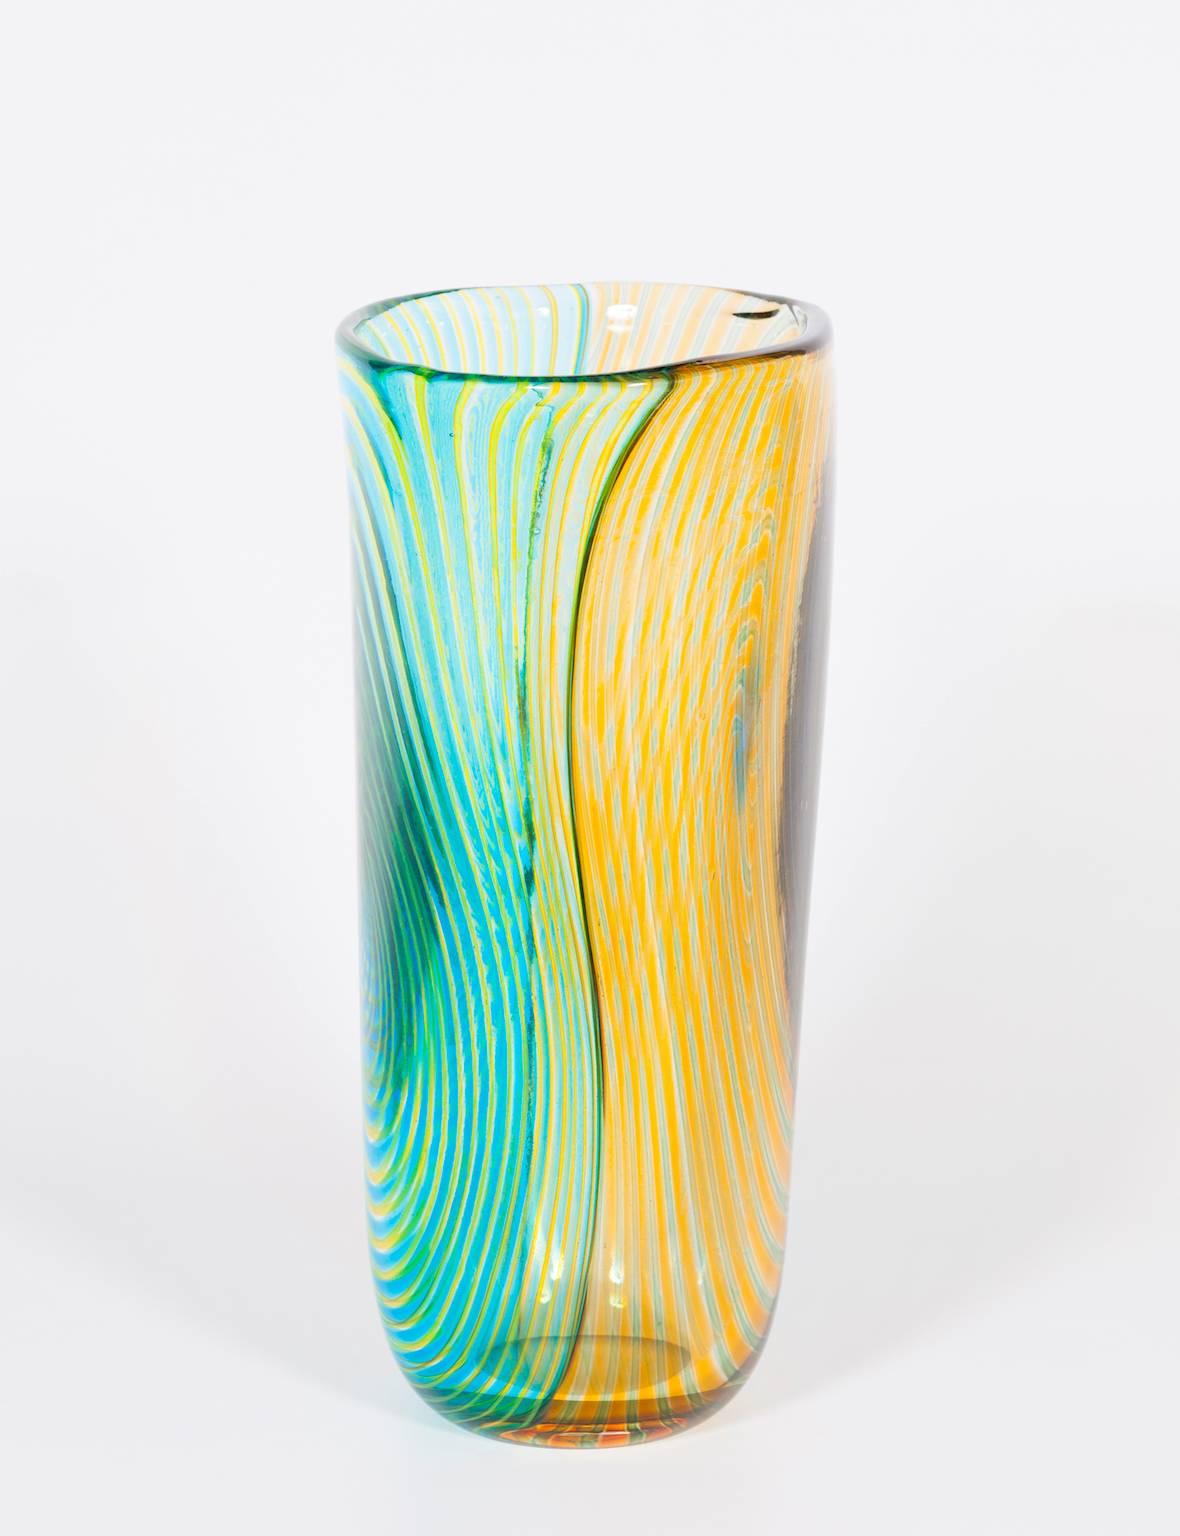 Gestreifte Vase aus mundgeblasenem Murano-Glas Grün-Orange und Hellblau, 1990er Jahre Italien.
Dies ist eine einzigartige gestreifte Vase, mit doppelt gefärbten Seiten und Streifen im Inneren der geblasenen Technik. Die Hälfte der Seite ist